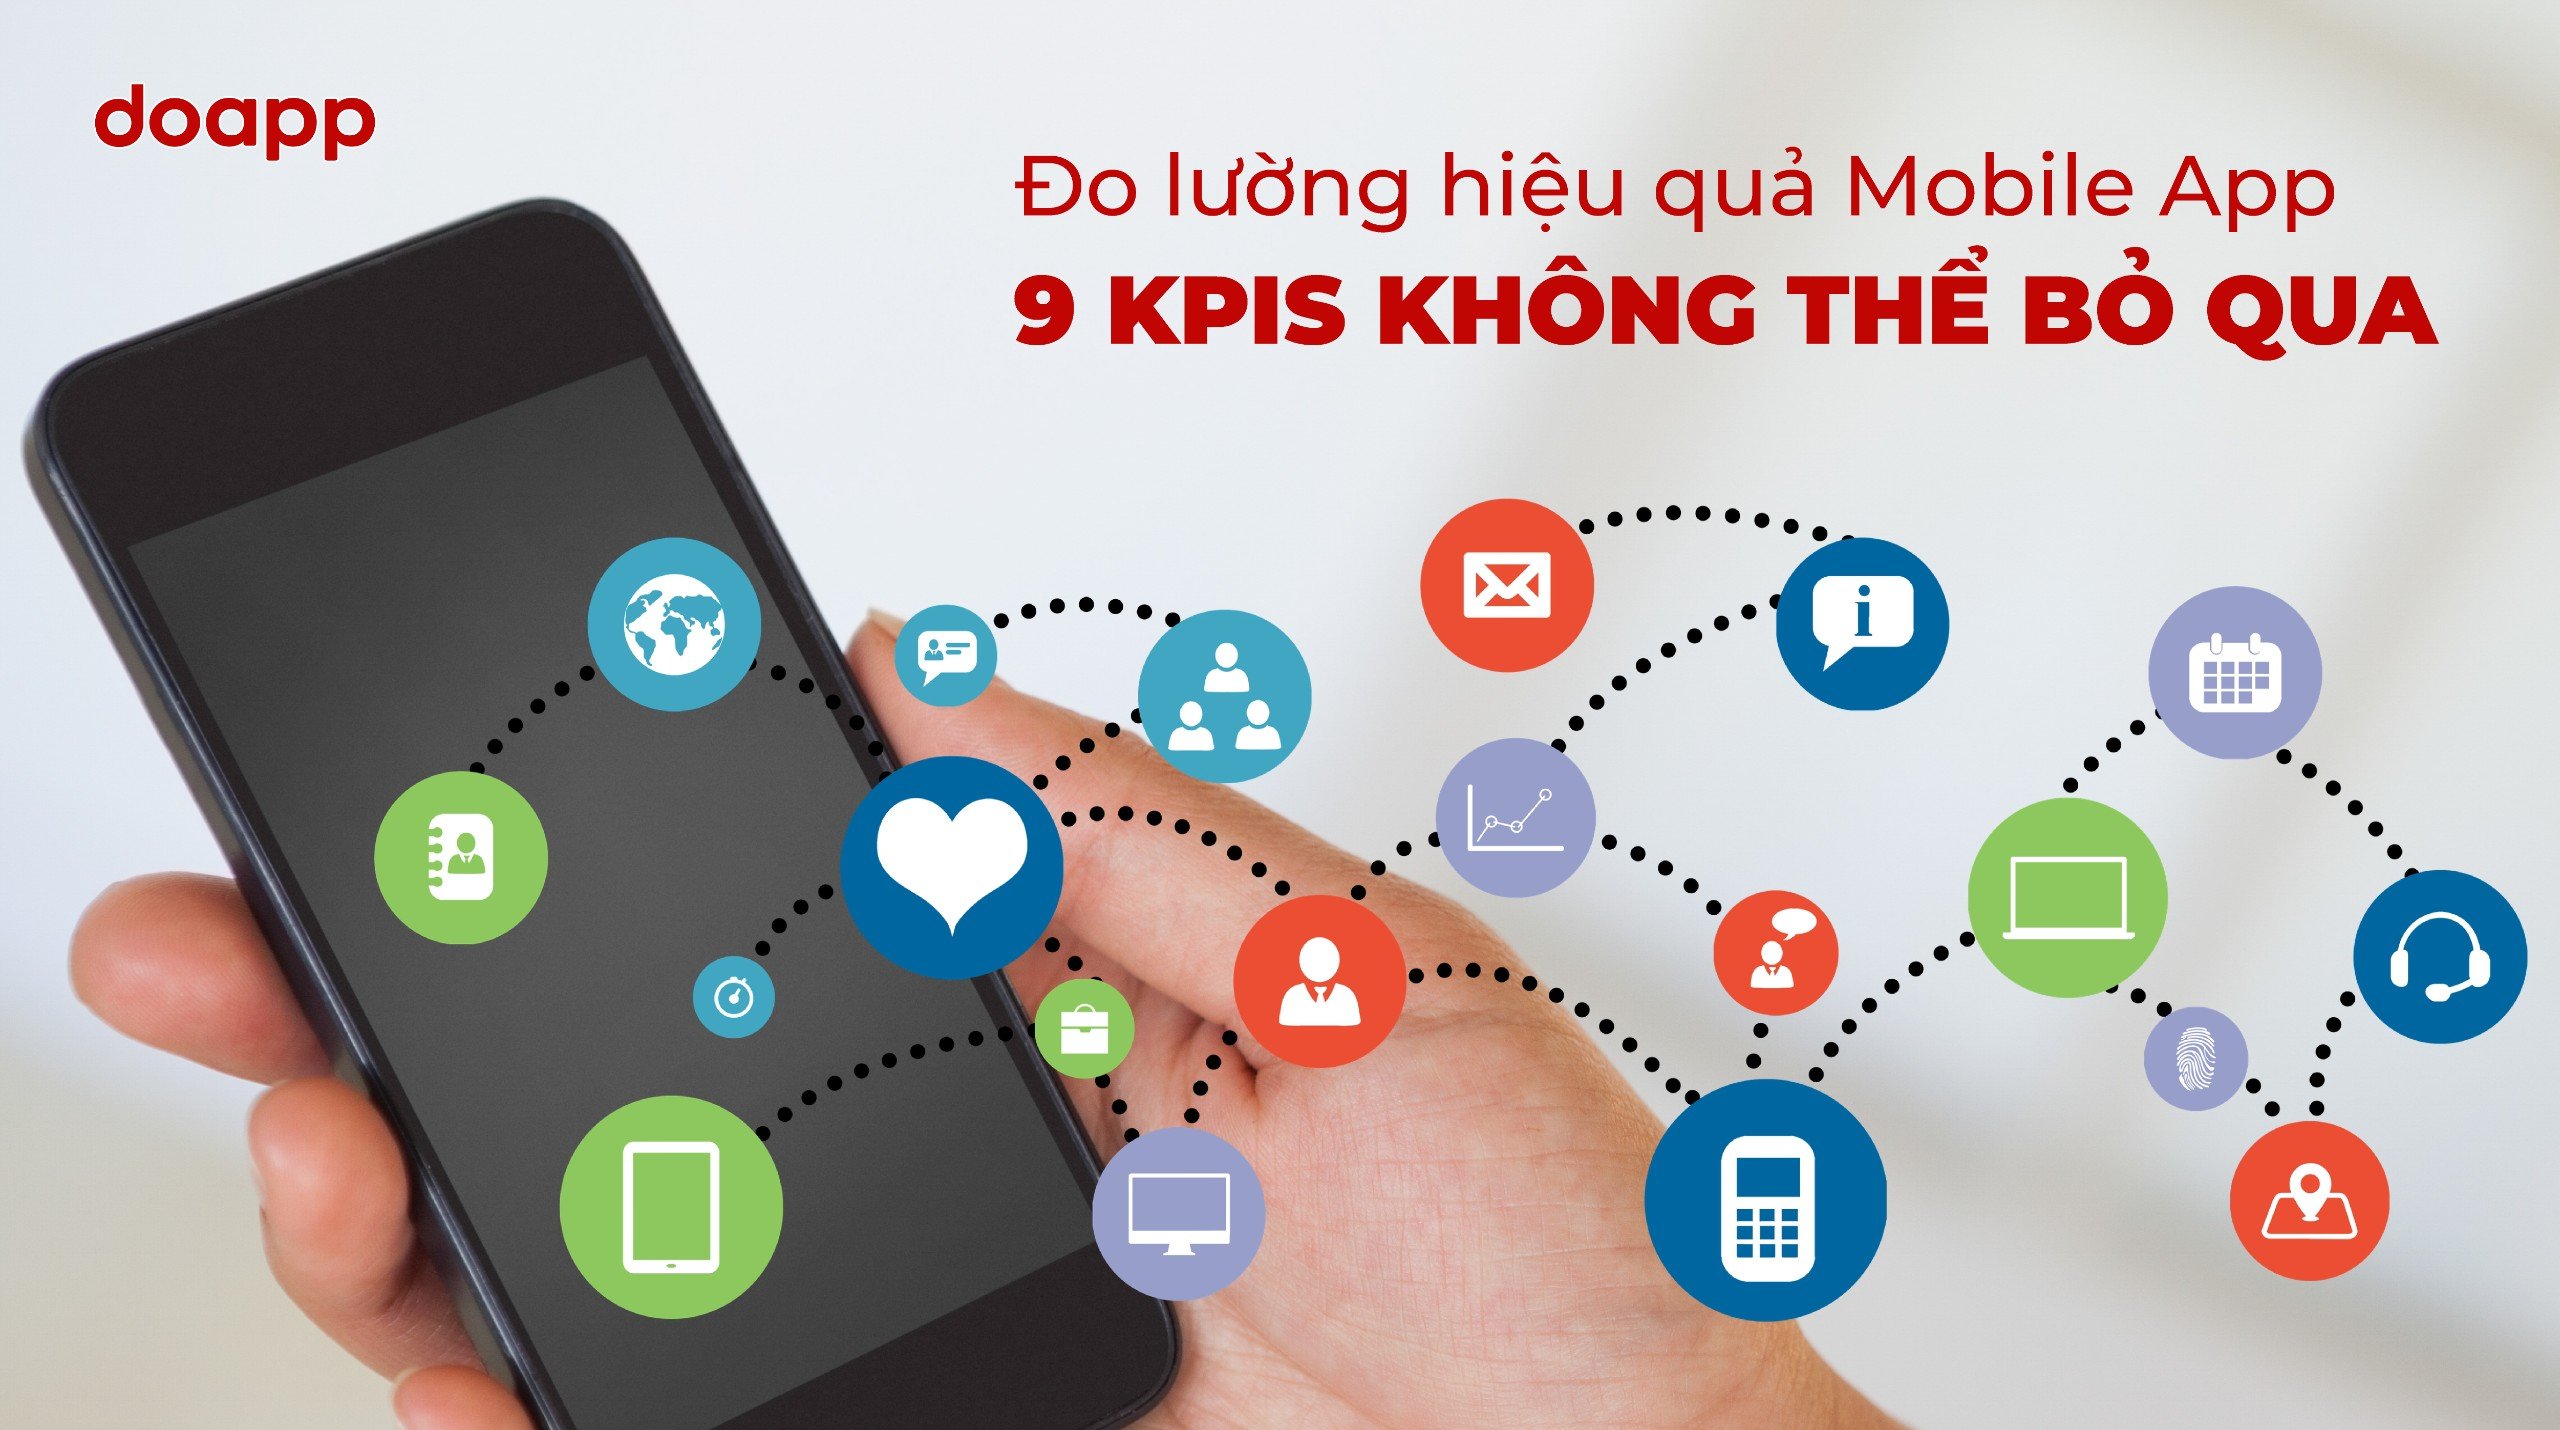 Đo lường hiệu quả Mobile App với 9 KPIs không thể bỏ qua